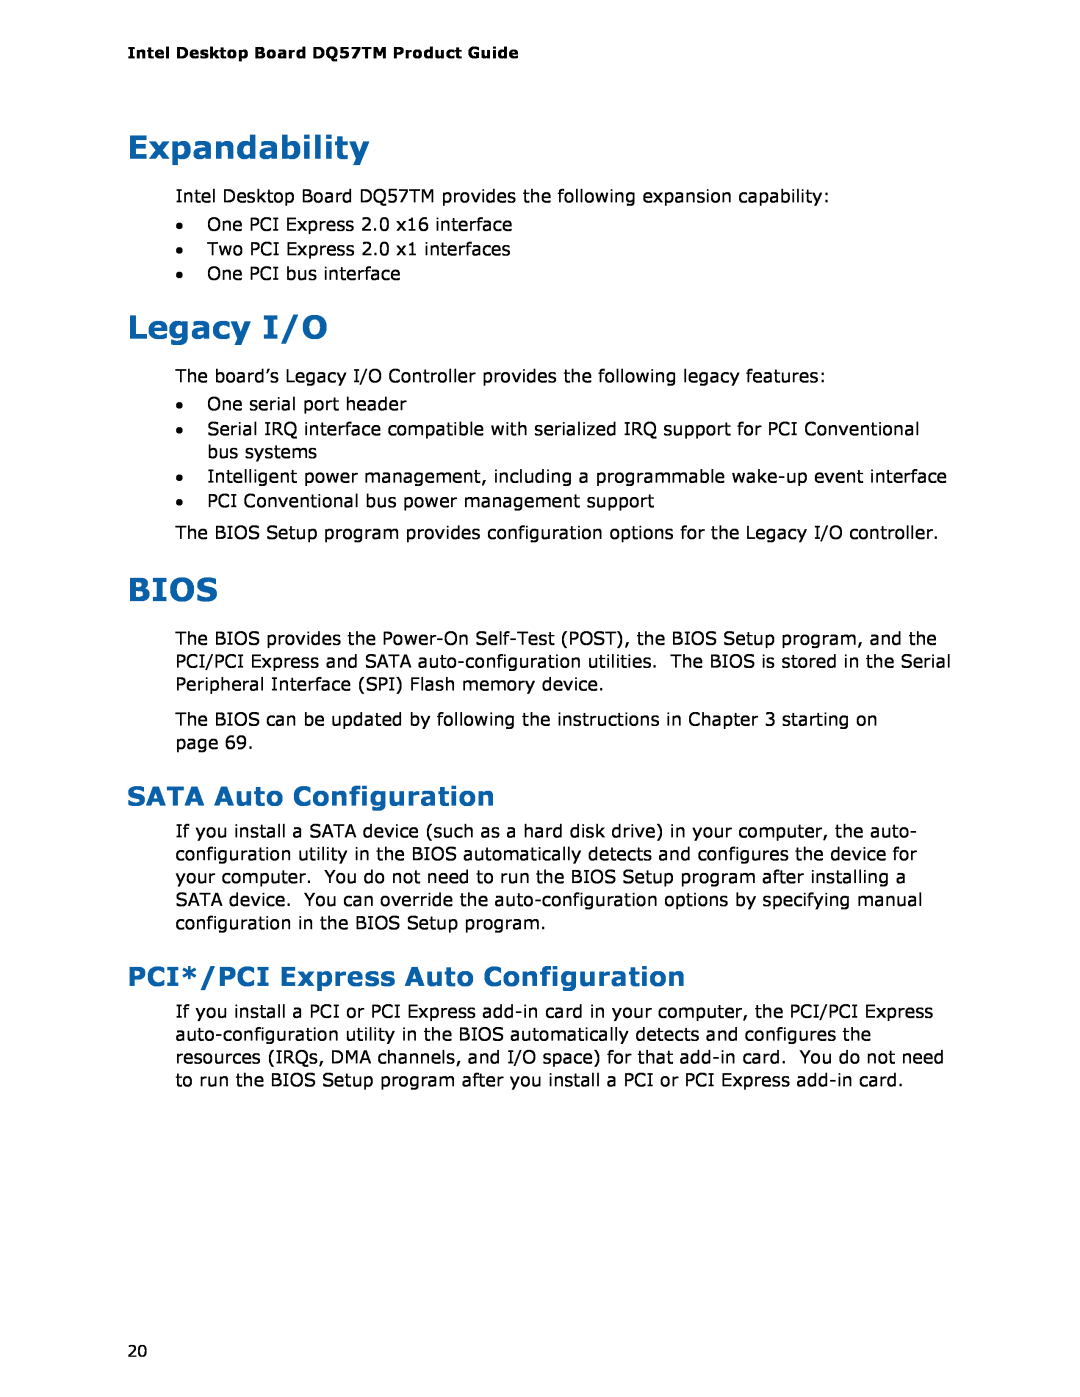 Intel DQ57TM manual Expandability, Legacy I/O, Bios, SATA Auto Configuration, PCI*/PCI Express Auto Configuration 